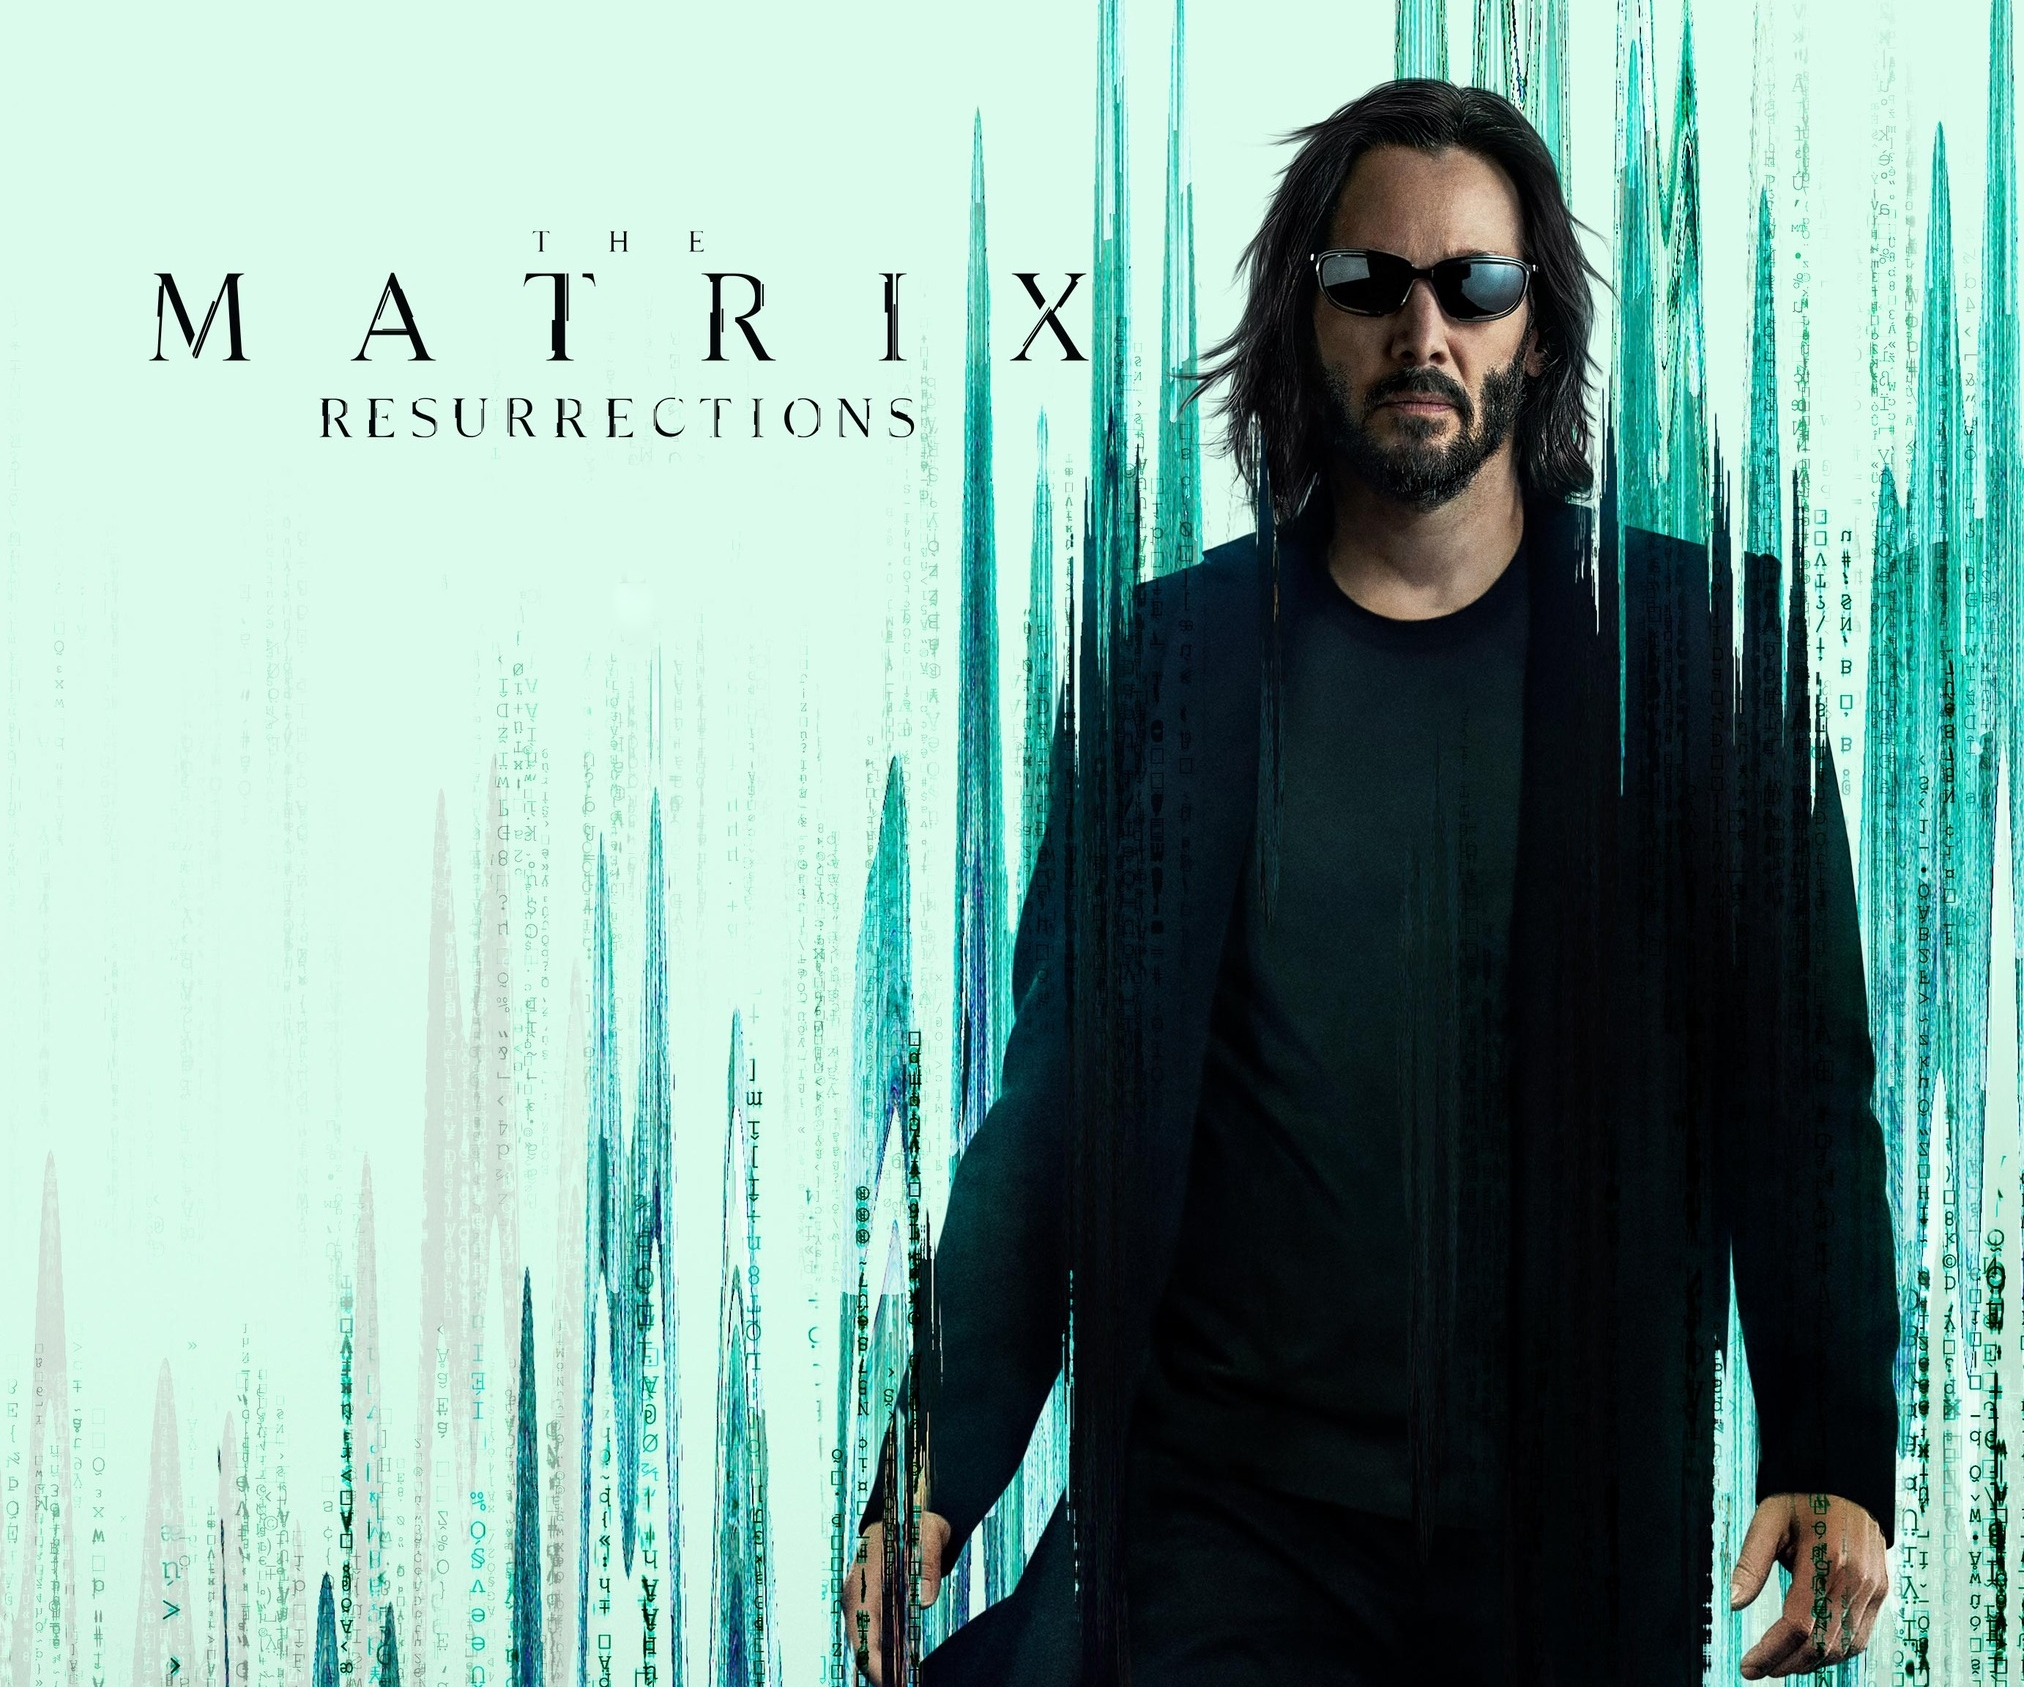 Keanu Reeves Neo The Matrix 2024x1687